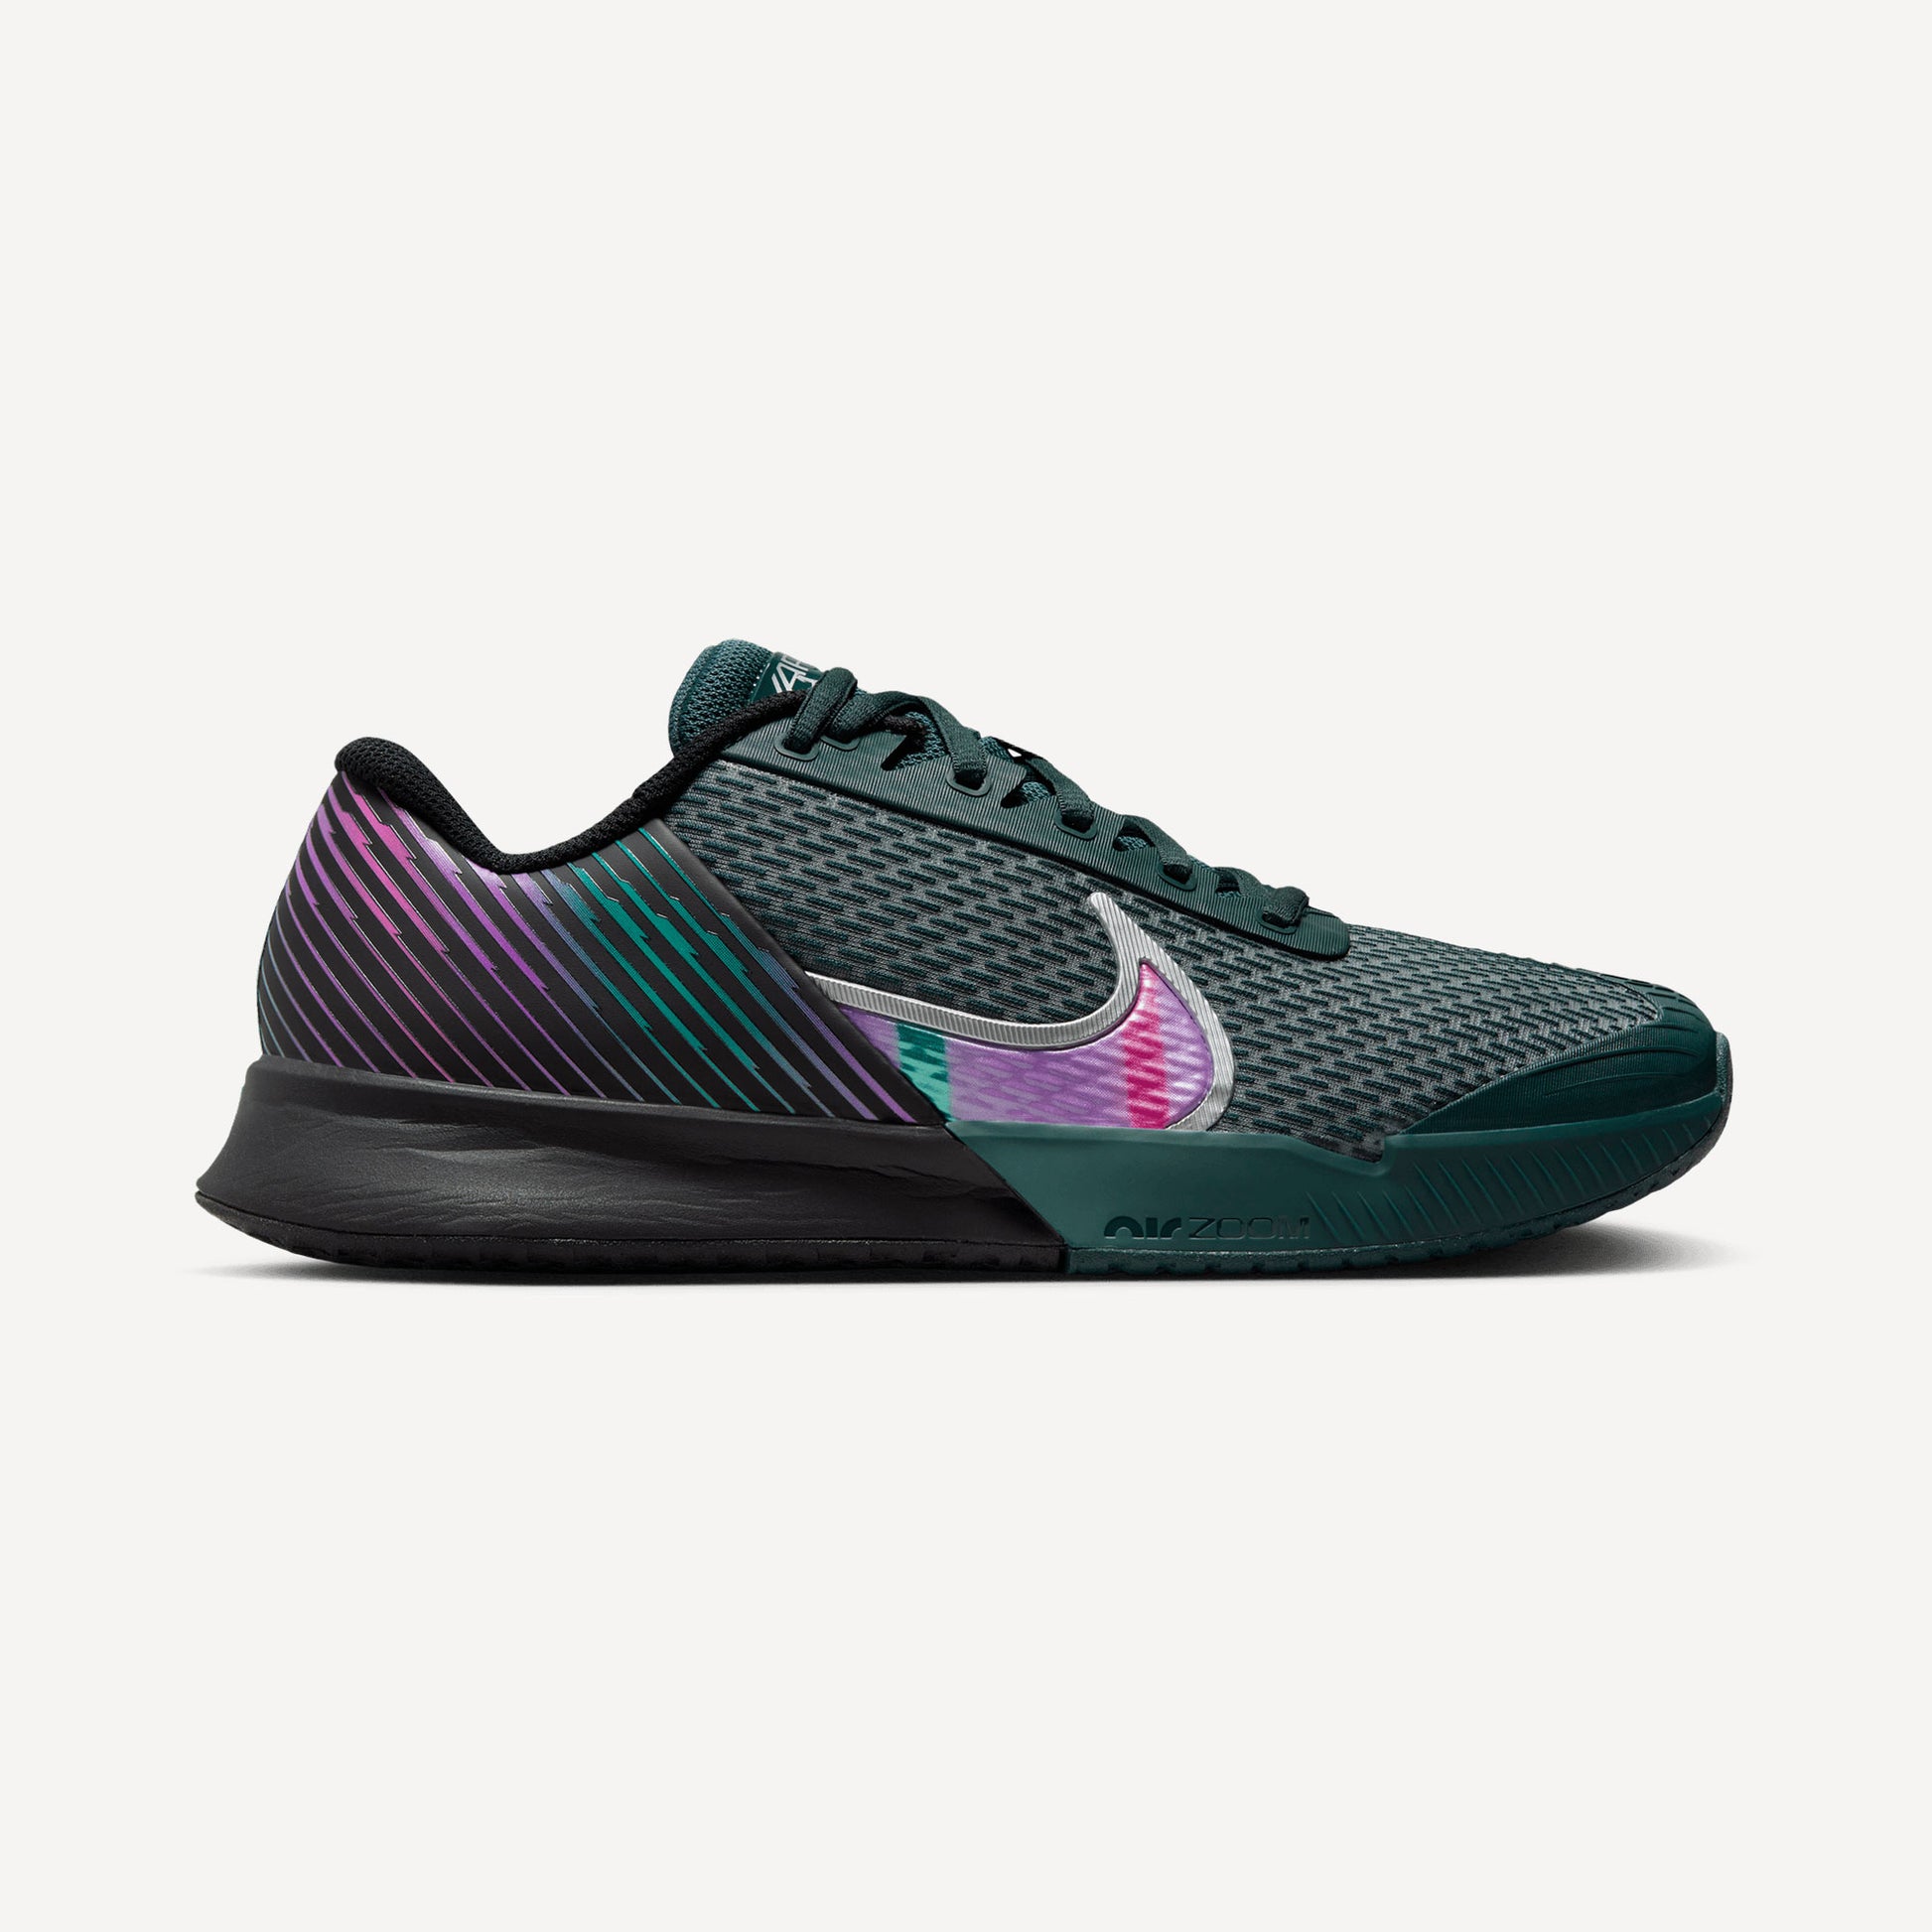 NikeCourt Air Zoom Vapor Pro 2 Premium Men's Hard Court Tennis Shoes Black (1)